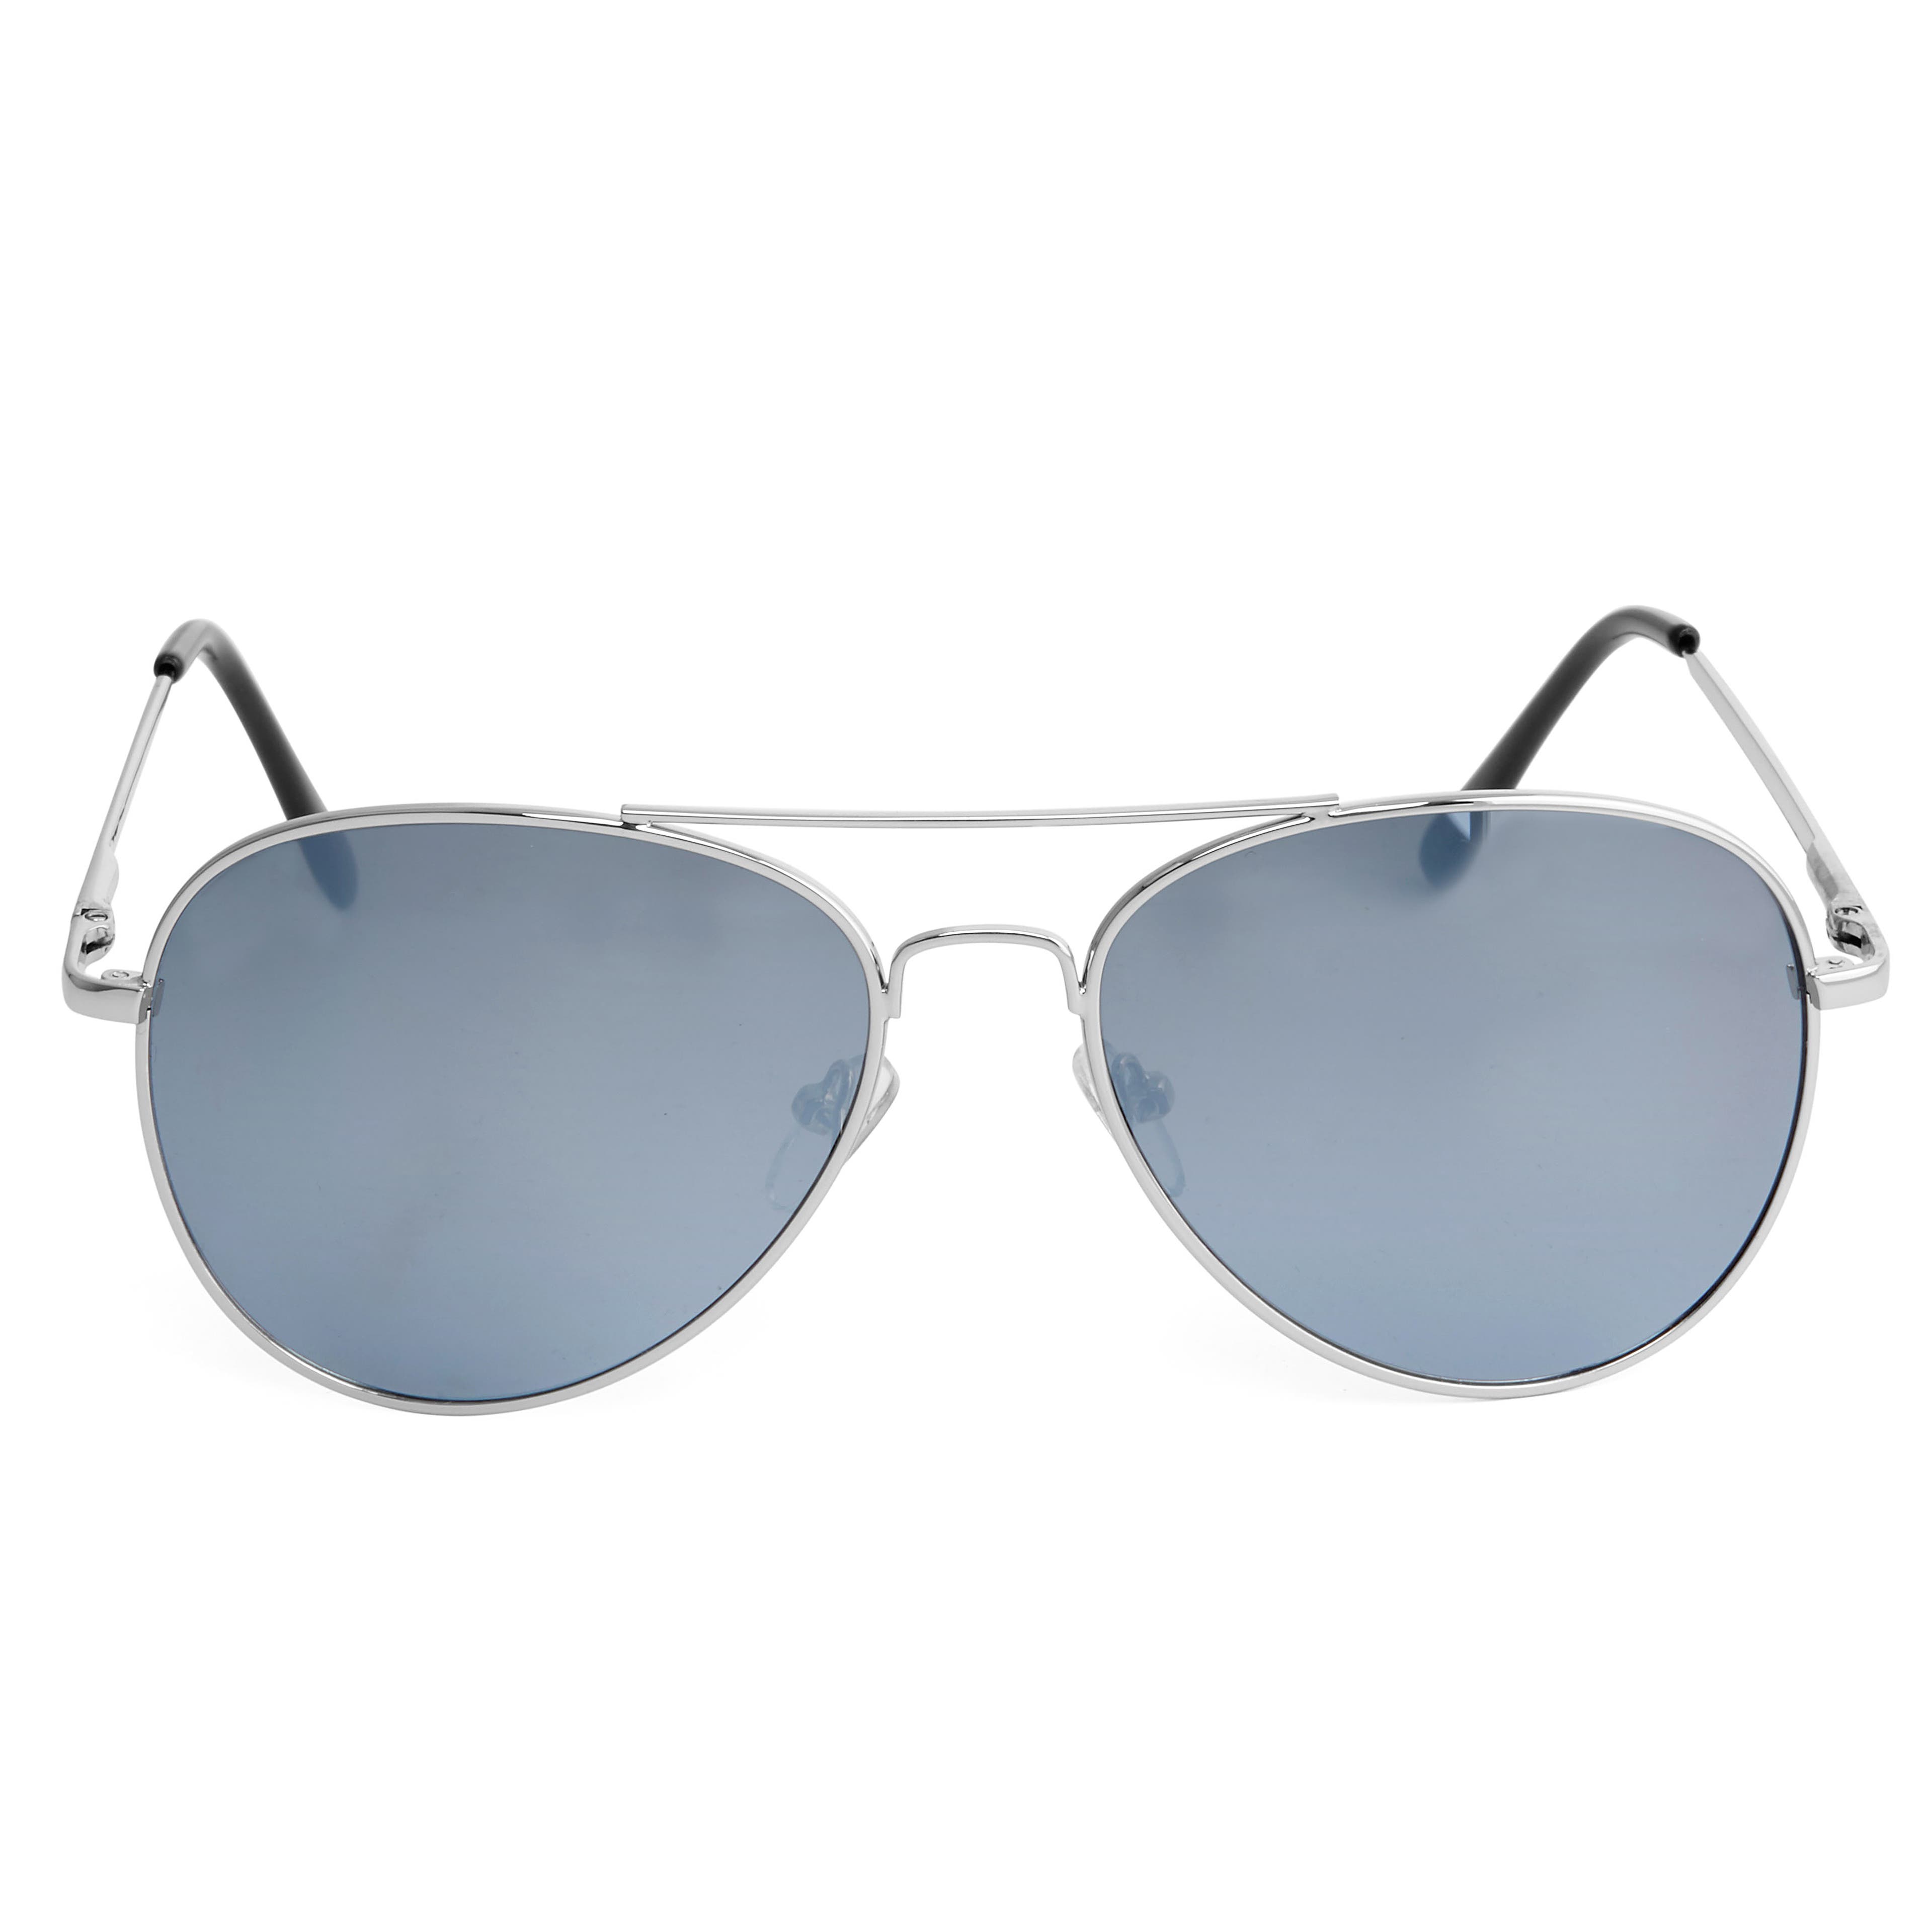 Aviator Silver-Tone Mirrored Sunglasses